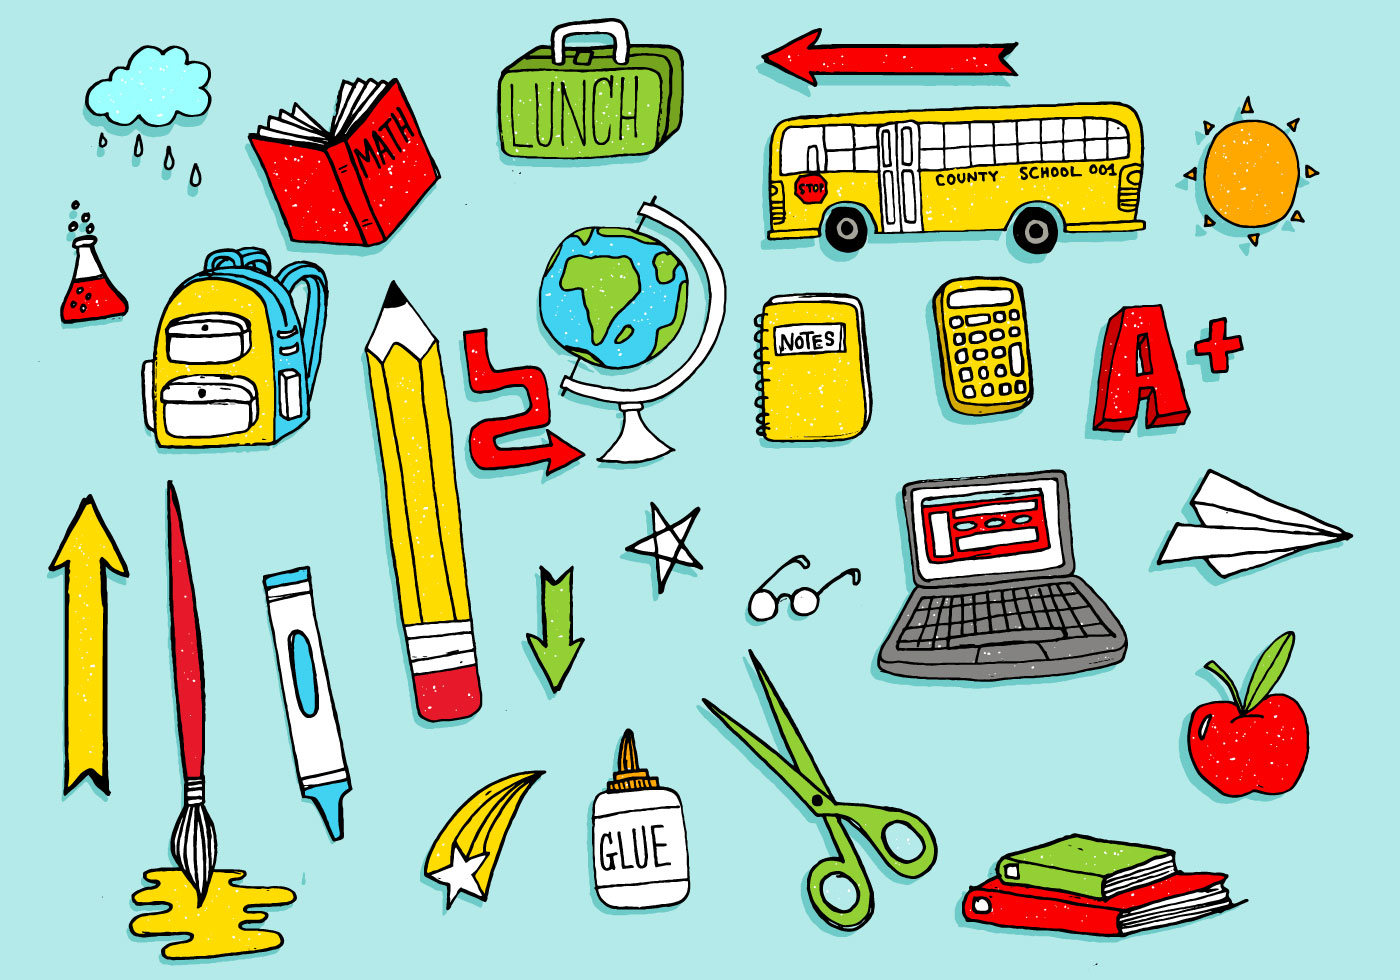 Download School Supplies Doodles Pack - Download Free Vectors ...